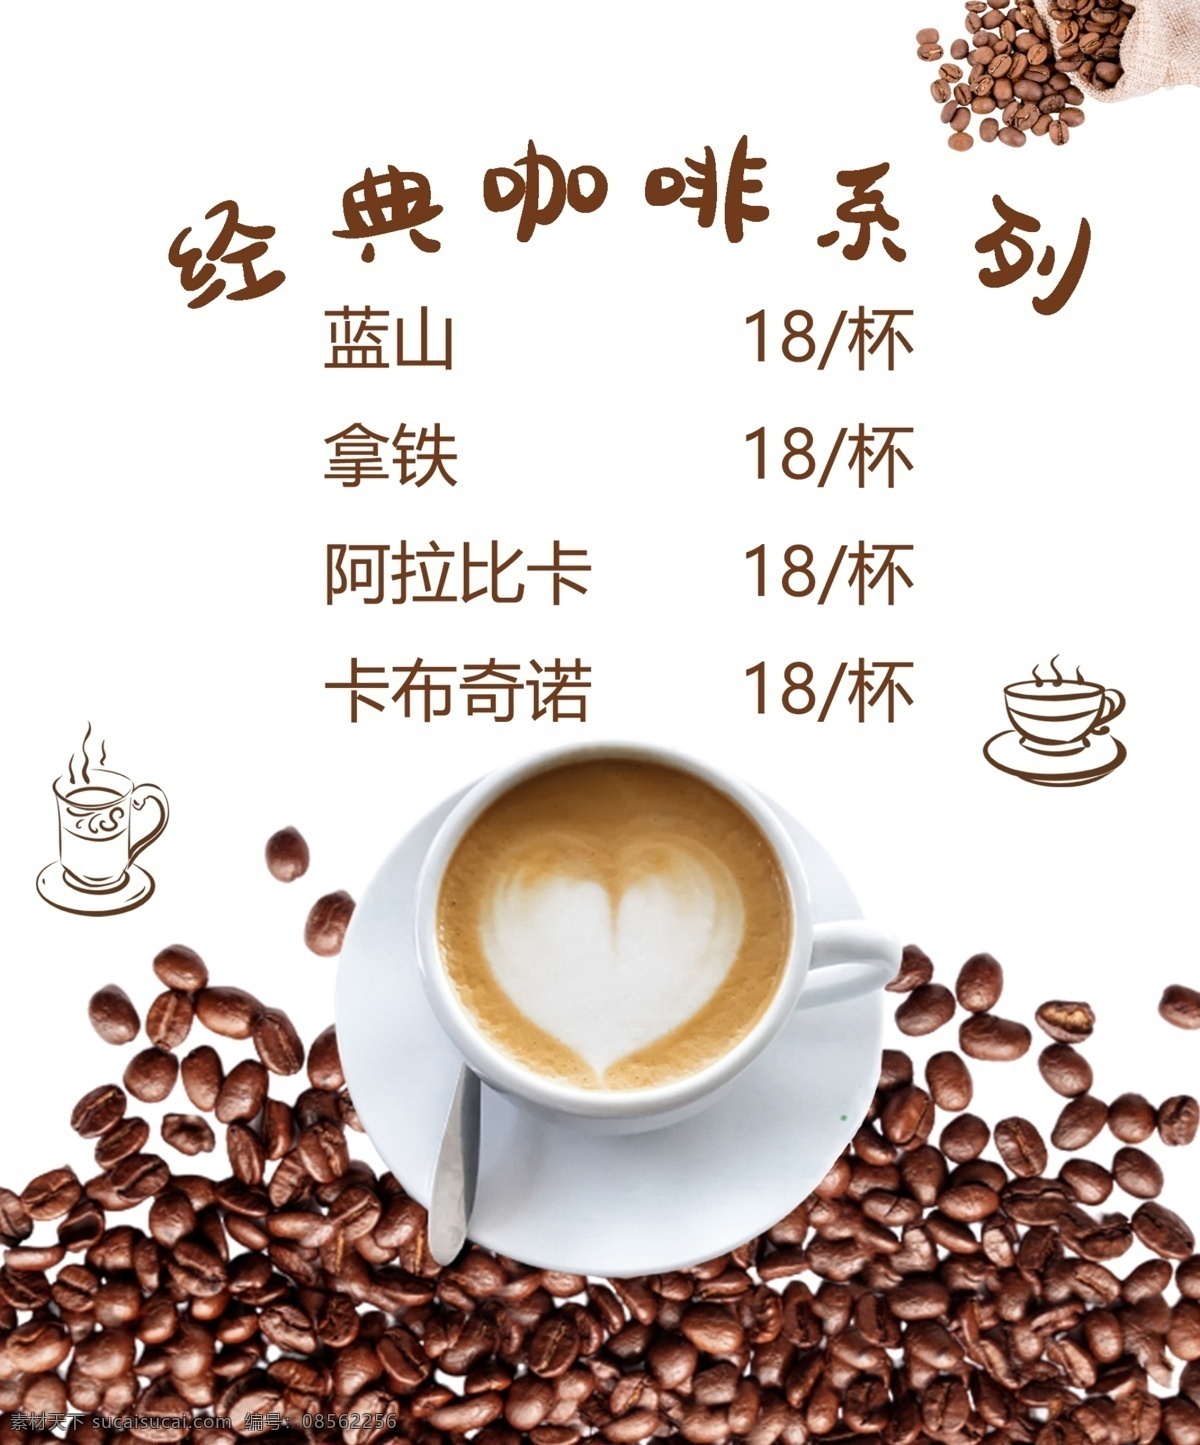 咖啡海报图片 经典咖啡 美味咖啡 卡布奇诺 蓝山咖啡 咖啡系列